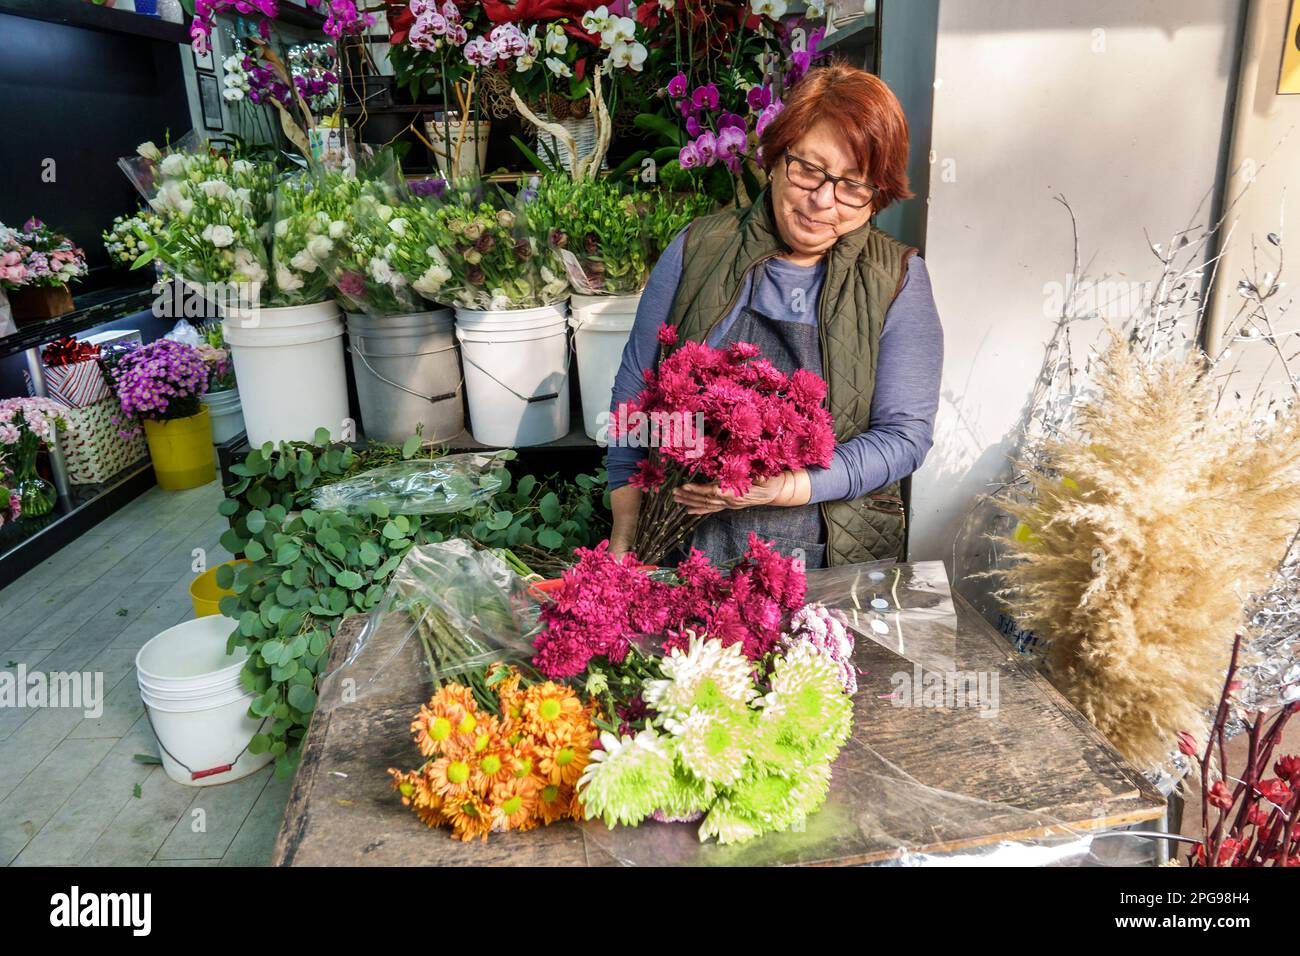 Ciudad de México, Polanco, flores de floristería, mujer mujer mujer mujer mujer, adultos adultos, residentes residentes, interior interior interior, tiendas negocios s Foto de stock